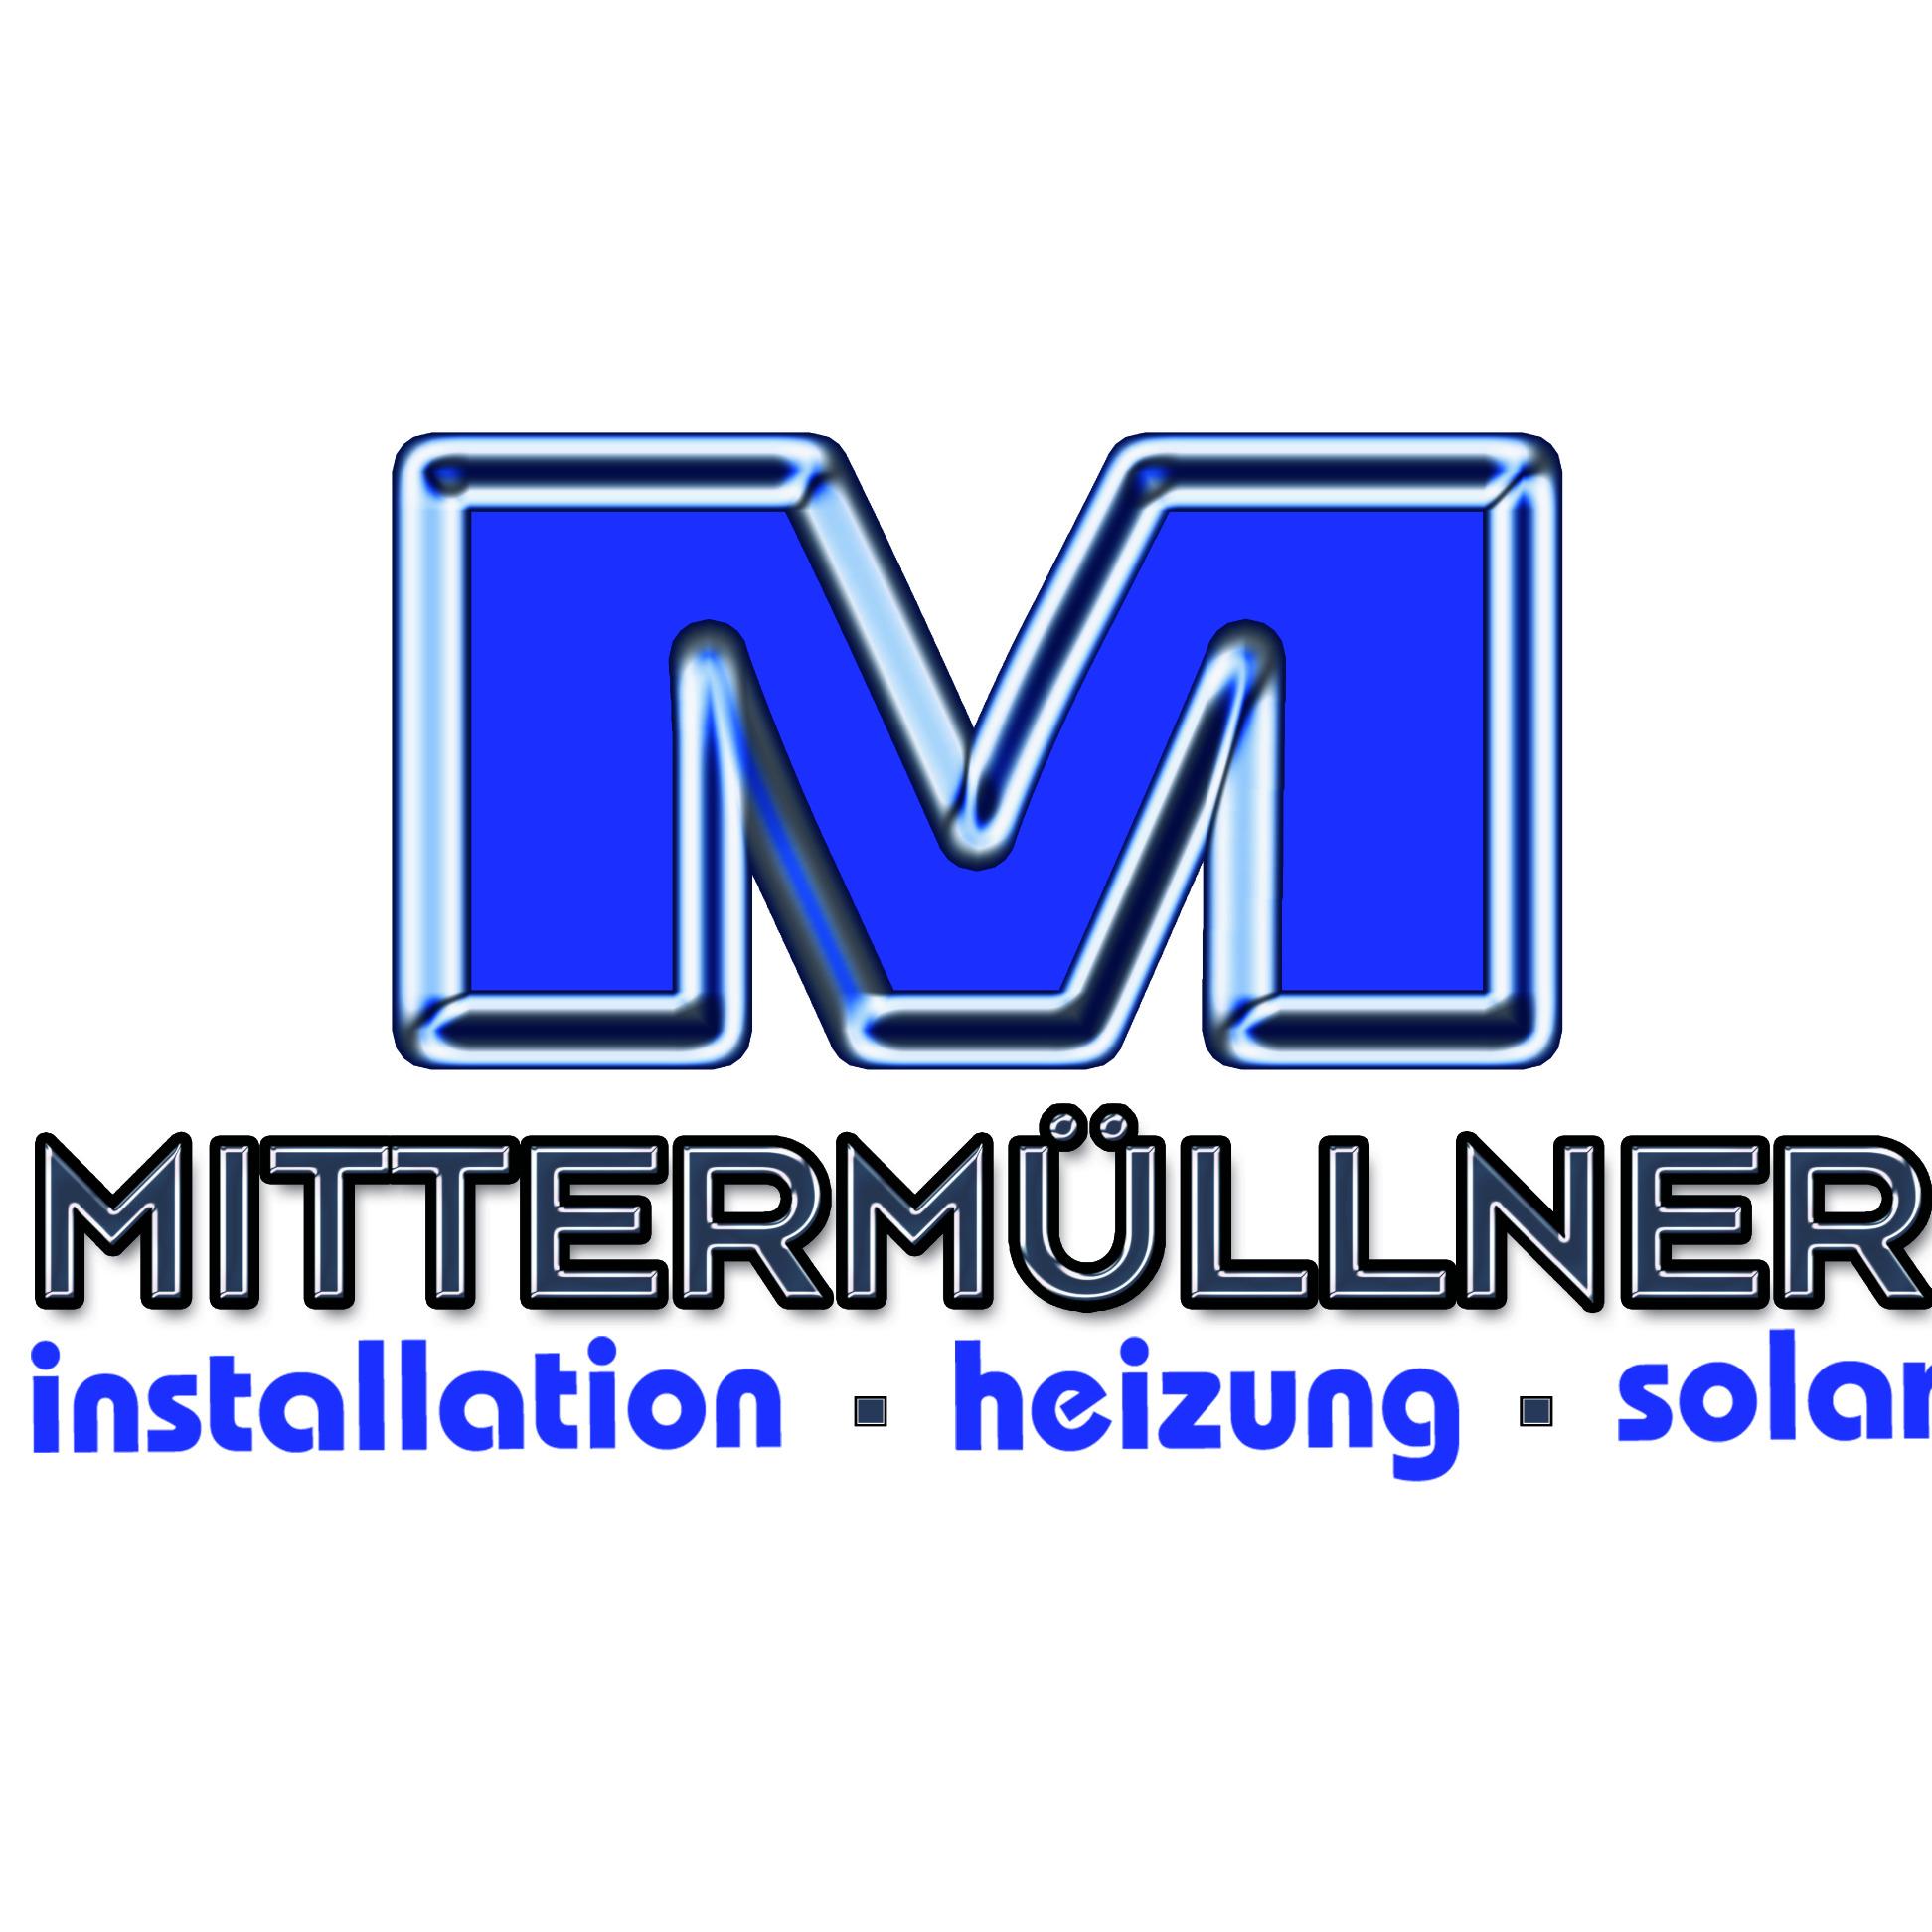 Martin Mittermüllner Logo